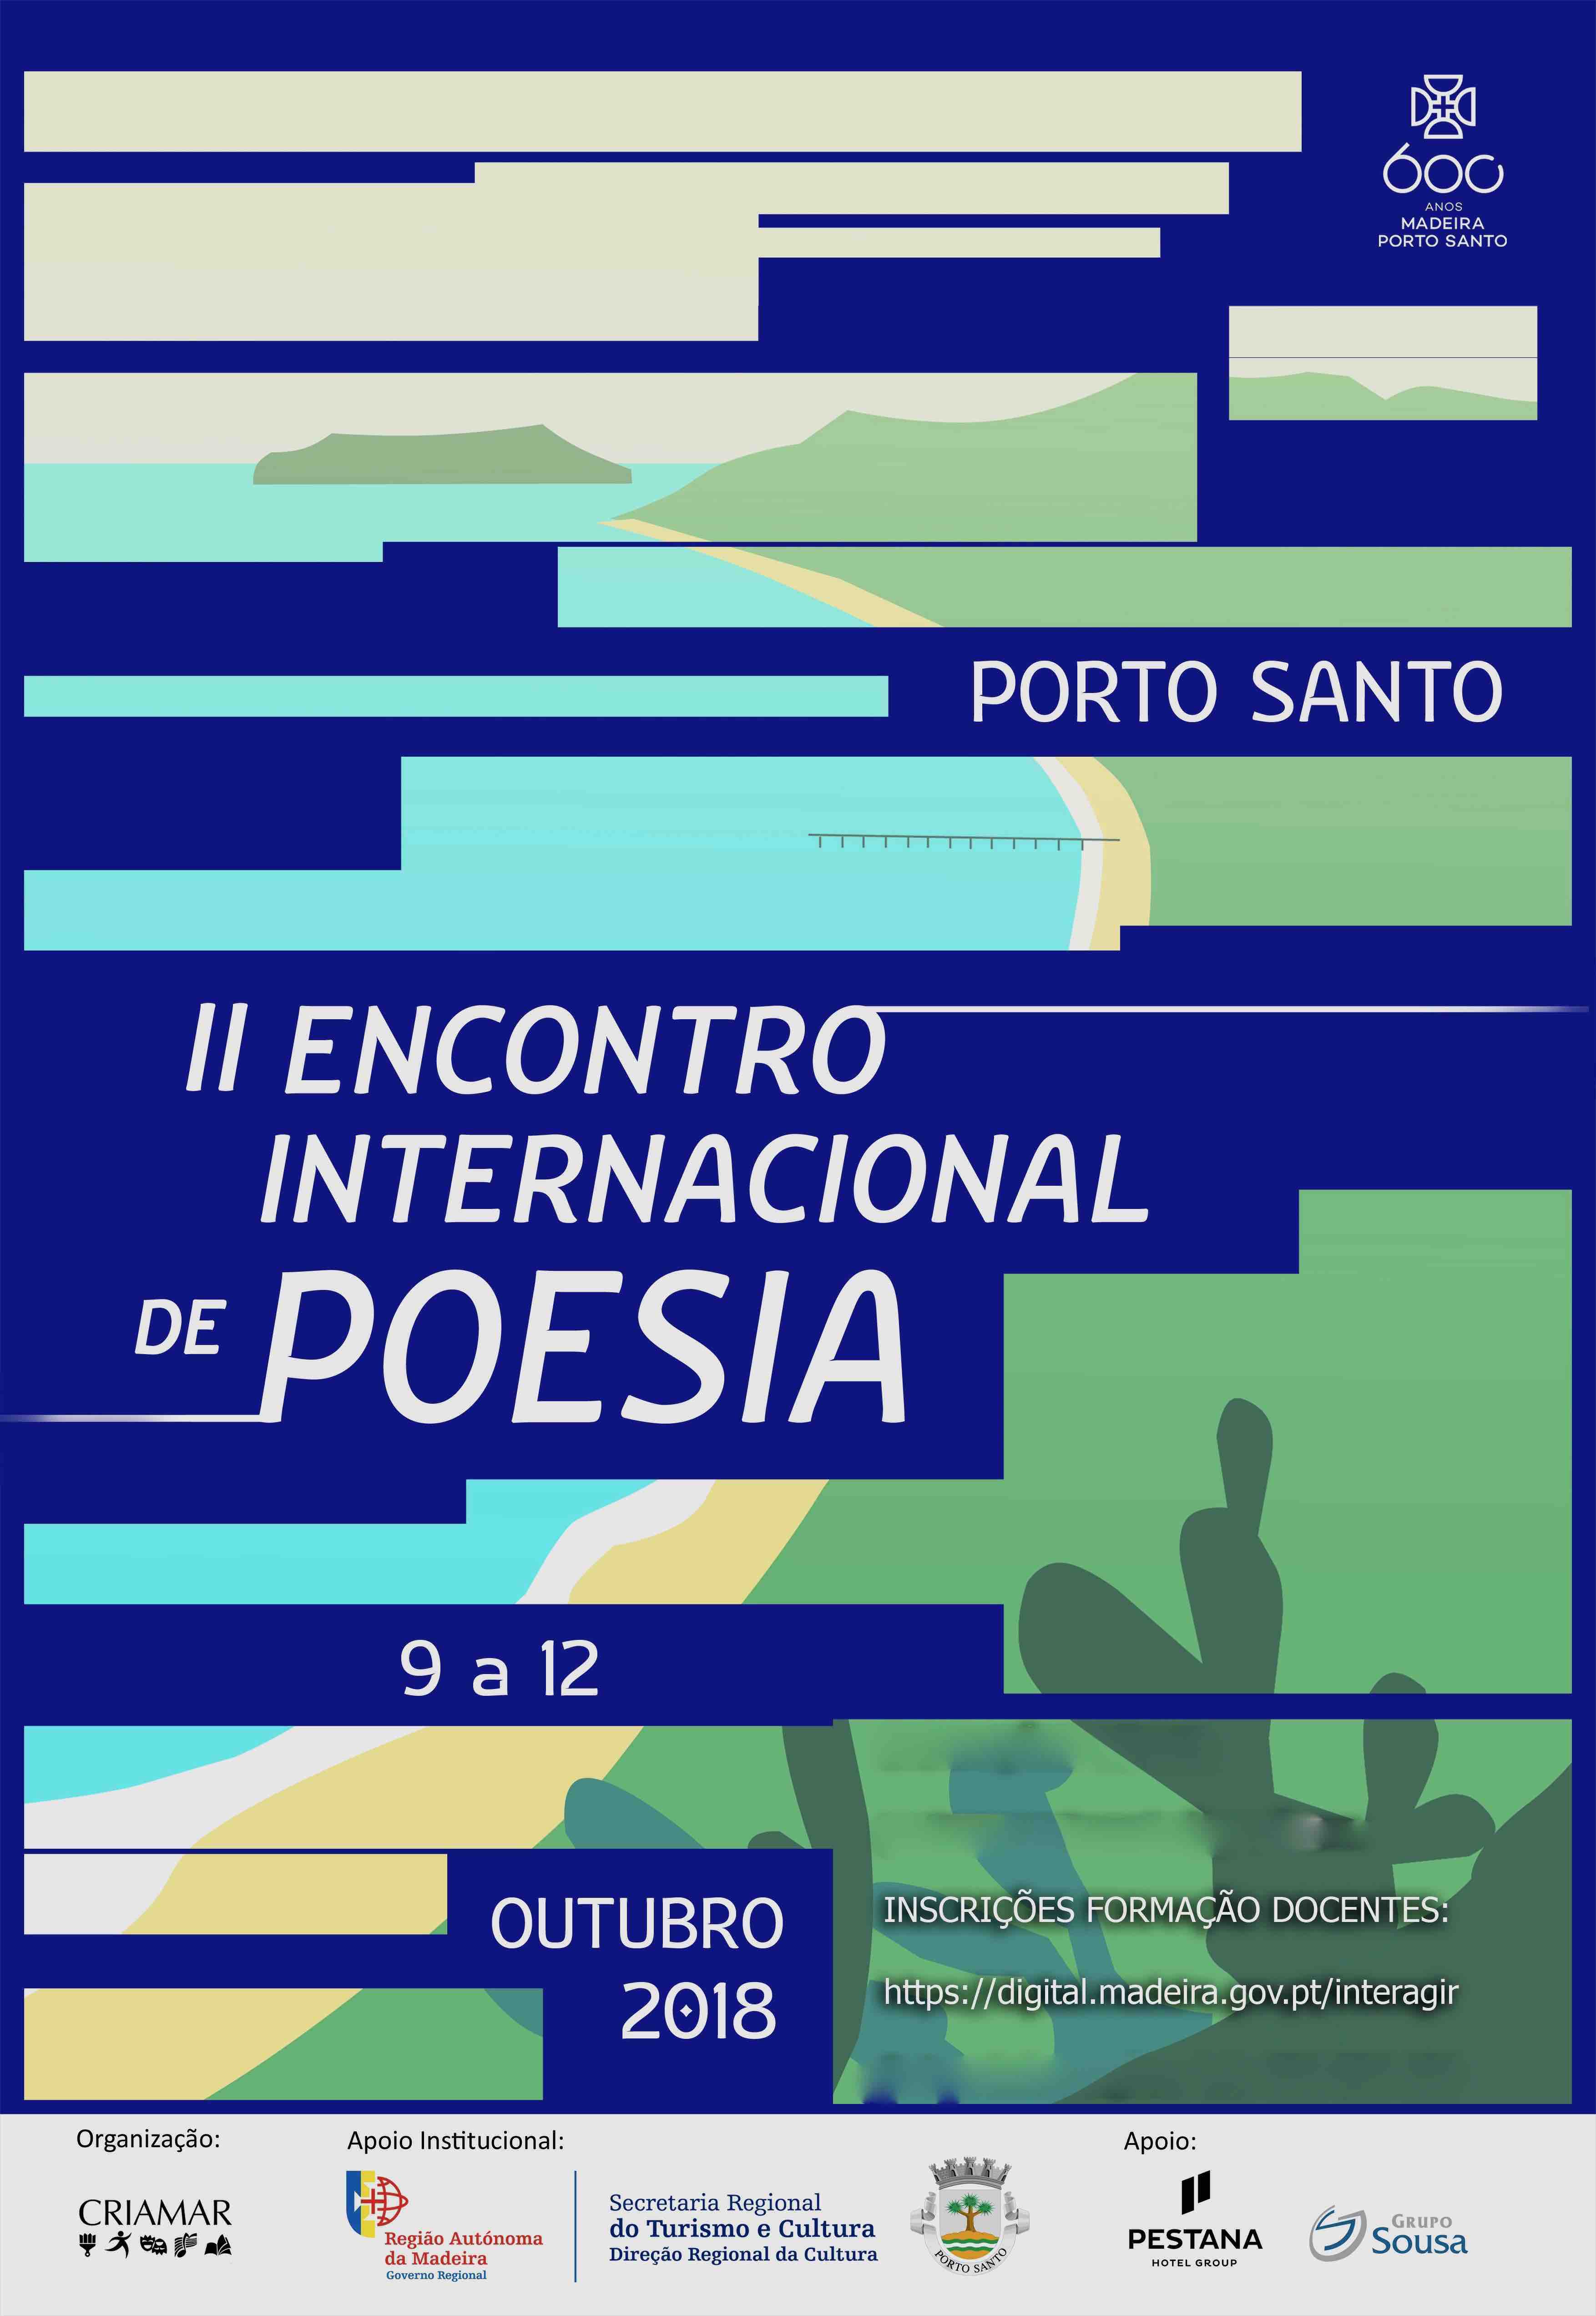 Encuentro Internacional de Poesía Porto Santo